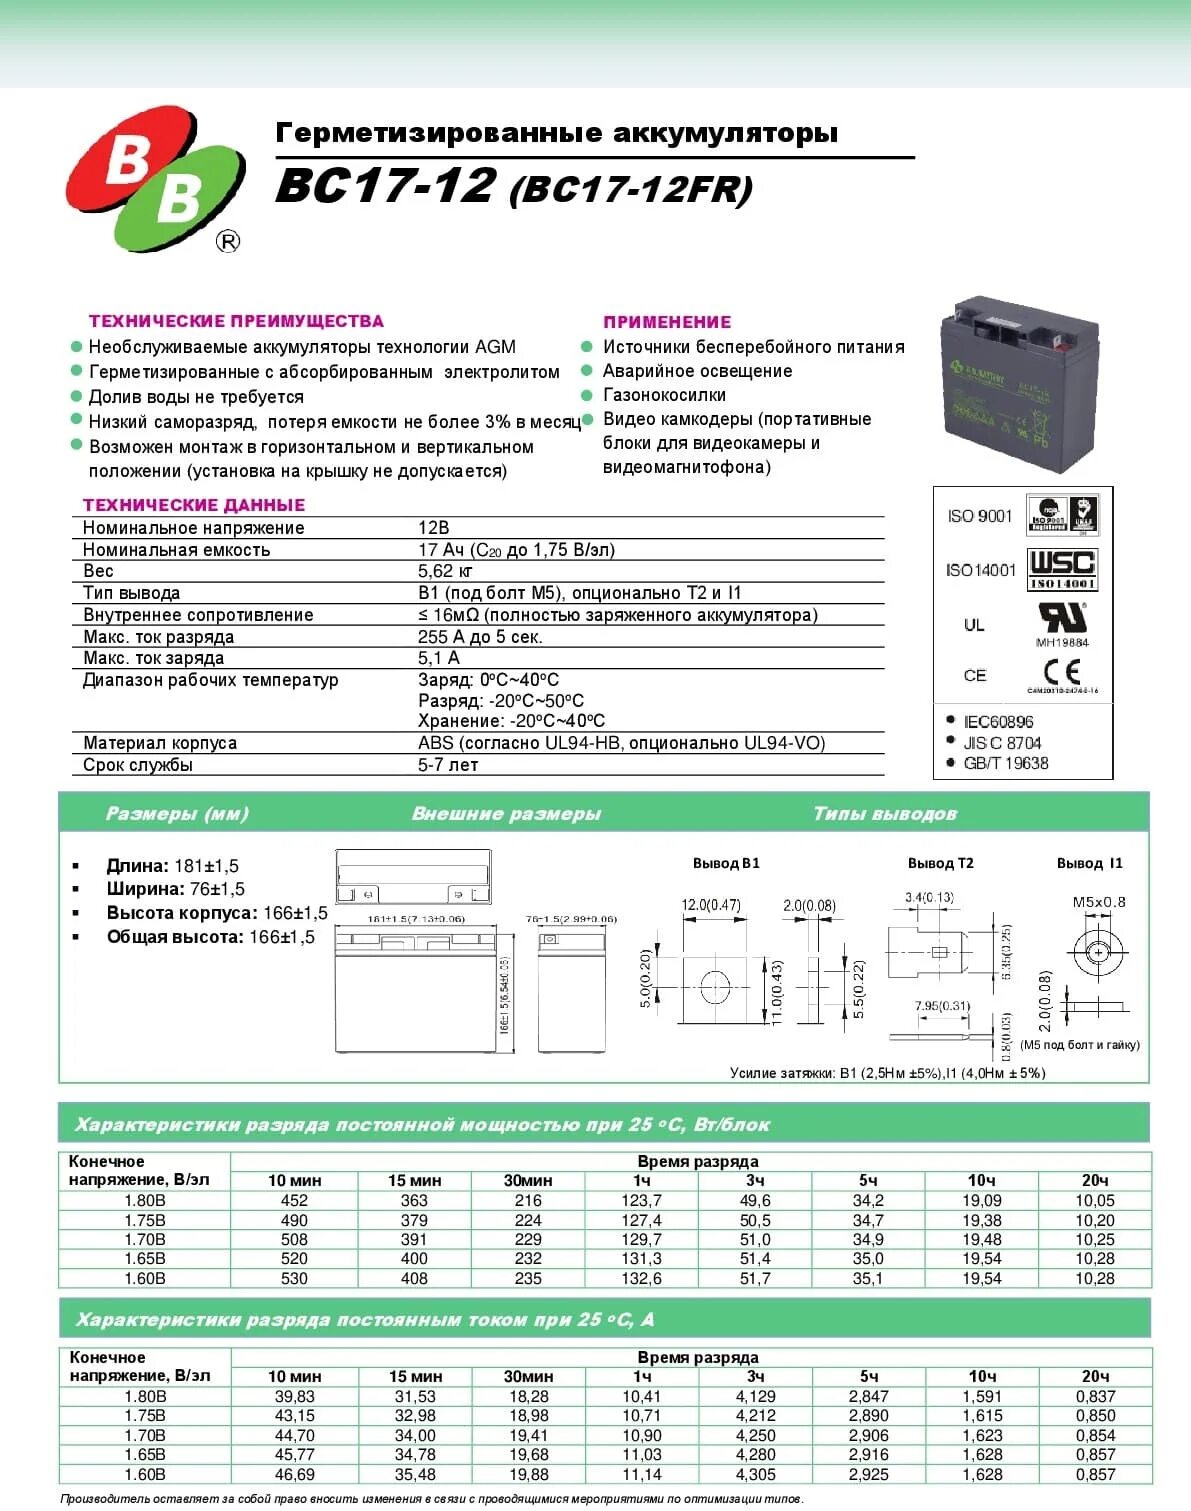 Battery bc 12 12. Аккумуляторная батарея BB Battery bc12-12. Аккумуляторная батарея BC 17-12. Батарея аккумуляторная BB Battery bc17-12 напряжение 12в. Bc17.